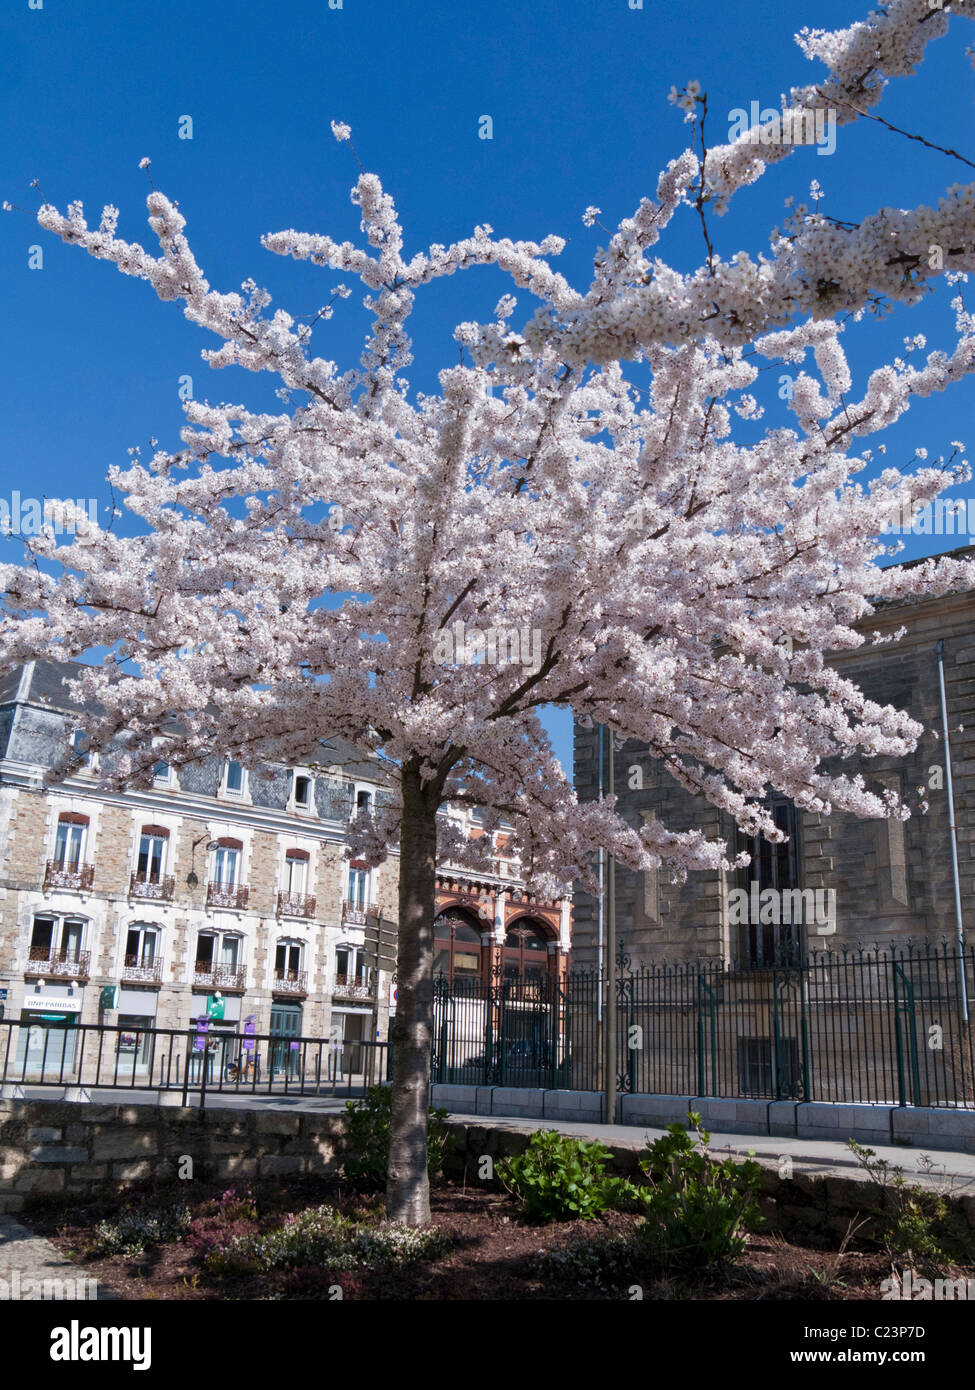 La floraison des cerisiers en fleur blanche au printemps Banque D'Images